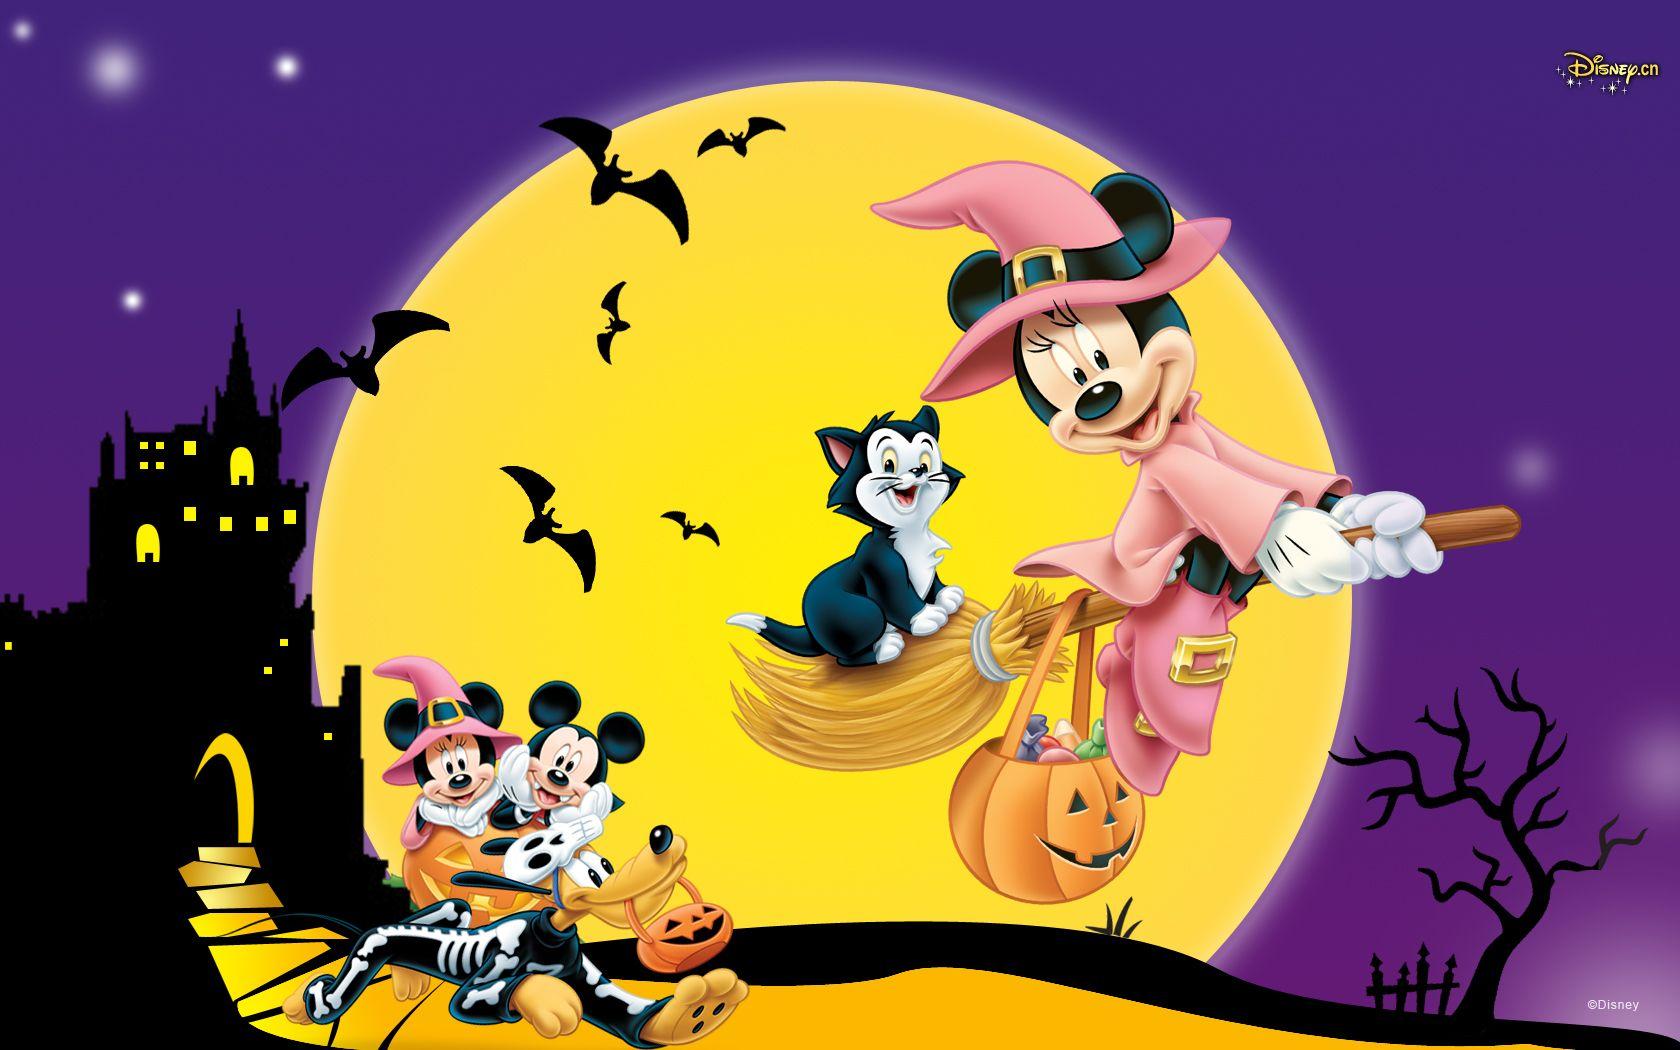 Disney Halloween Wallpapers Top Free Disney Halloween Backgrounds Wallpaperaccess